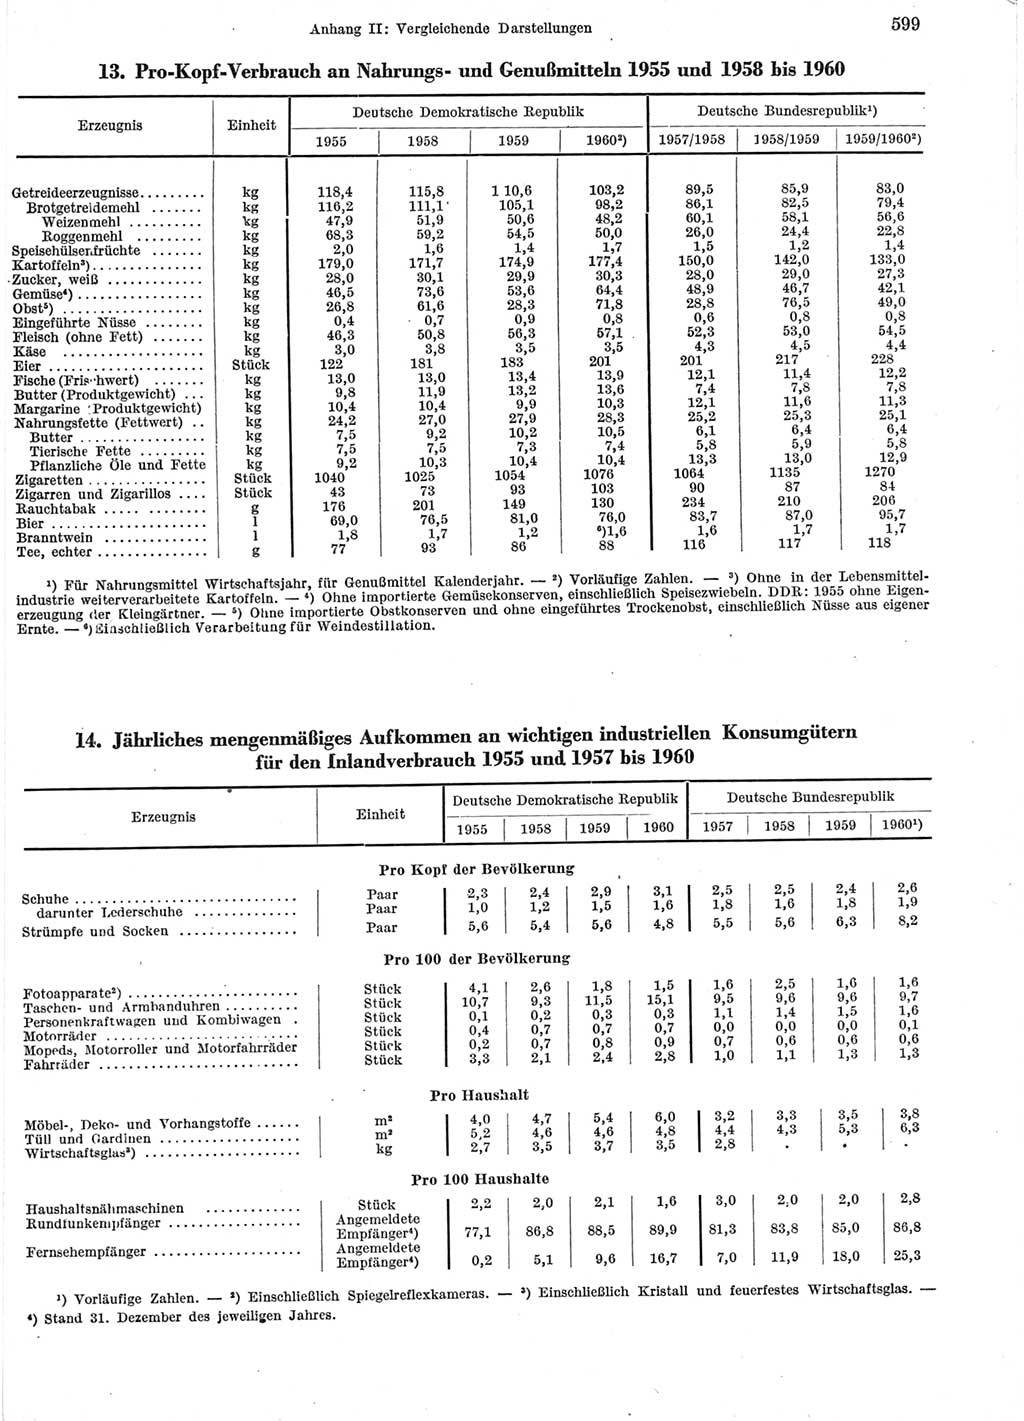 Statistisches Jahrbuch der Deutschen Demokratischen Republik (DDR) 1960-1961, Seite 599 (Stat. Jb. DDR 1960-1961, S. 599)